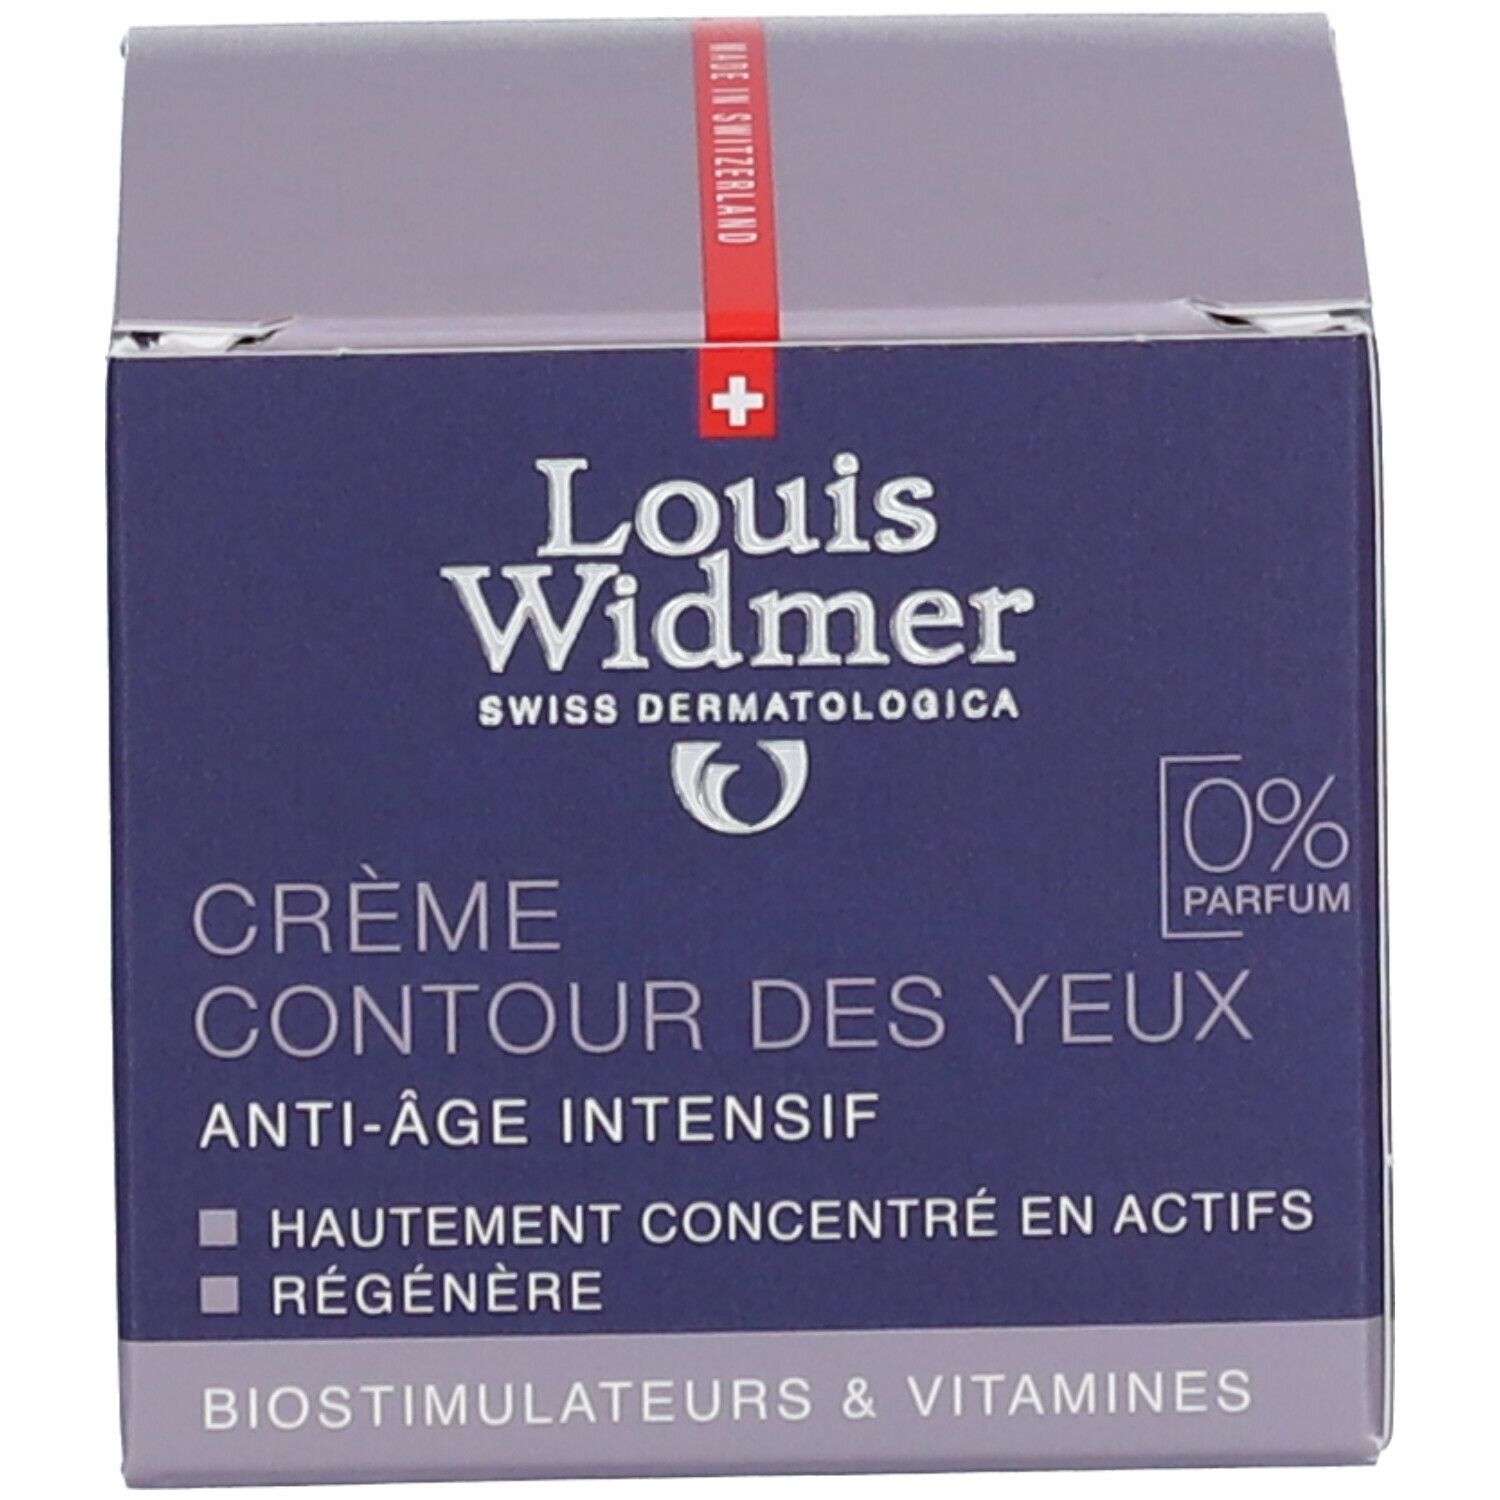 Louis Widmer Crème Contour des Yeux sans parfum